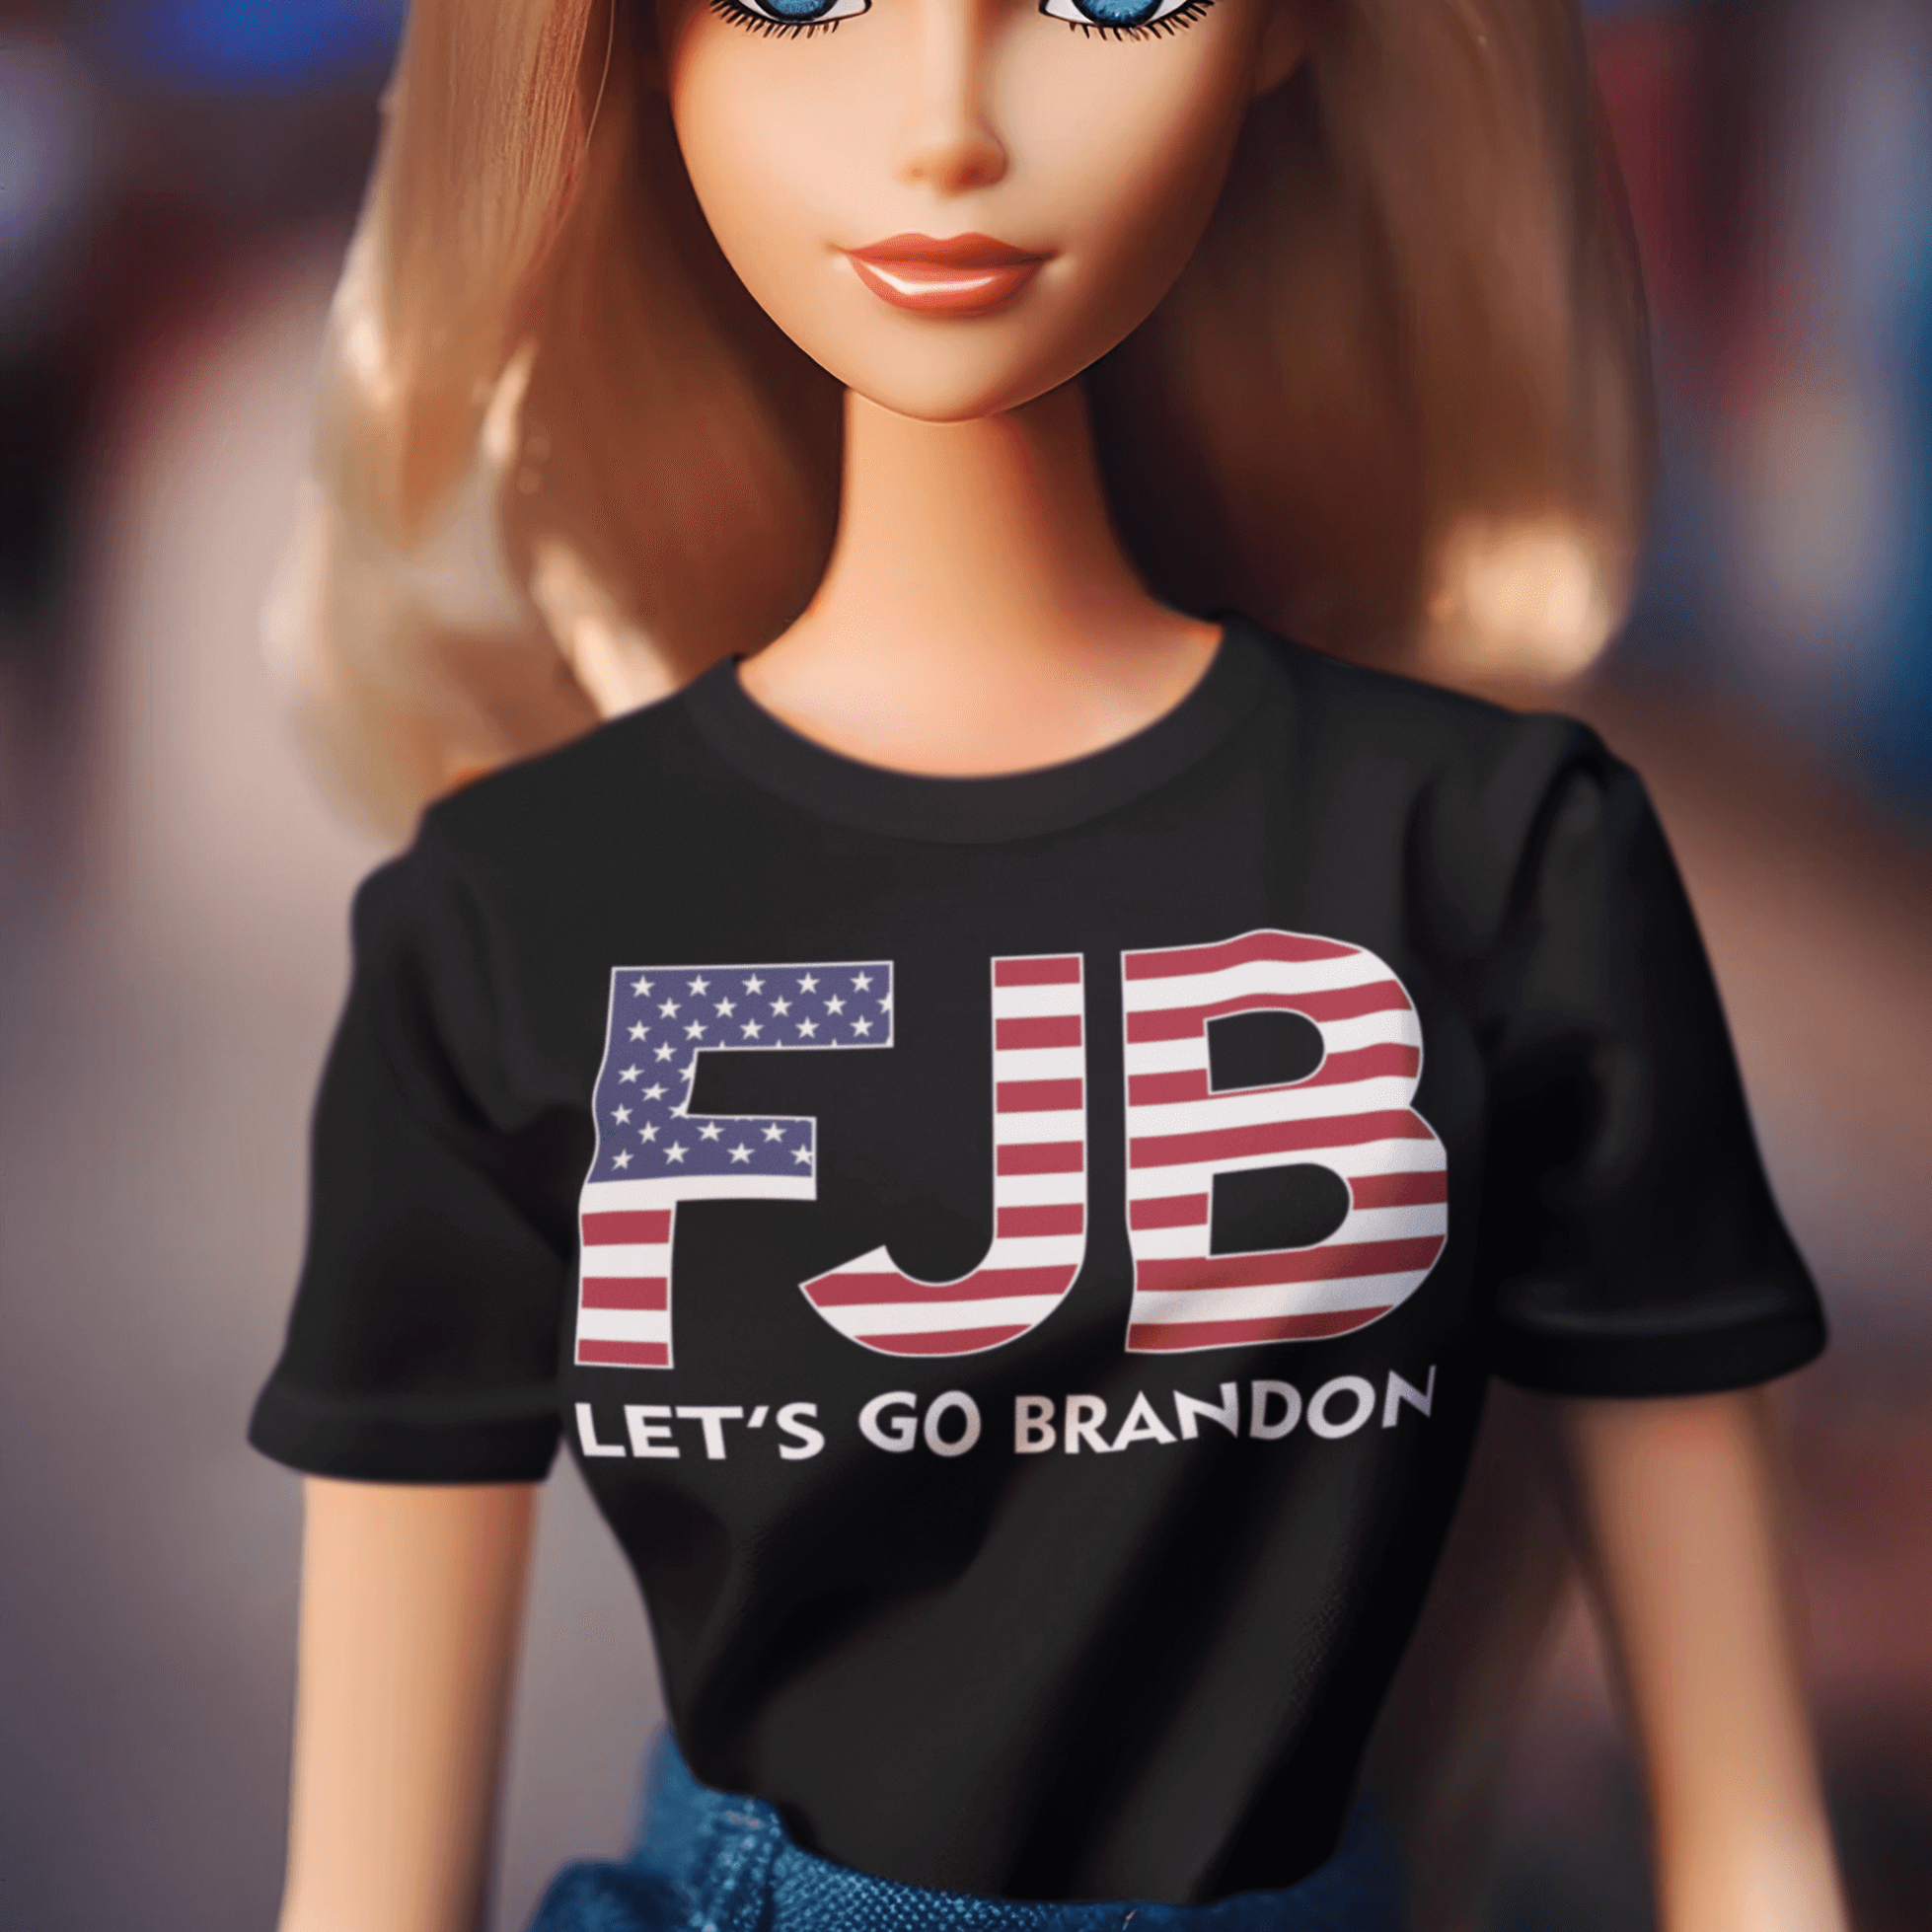 Let's Go Brandon FJB American Flag Lightweight Unisex Short Sleeve T-Shirt - TopKoalaTee